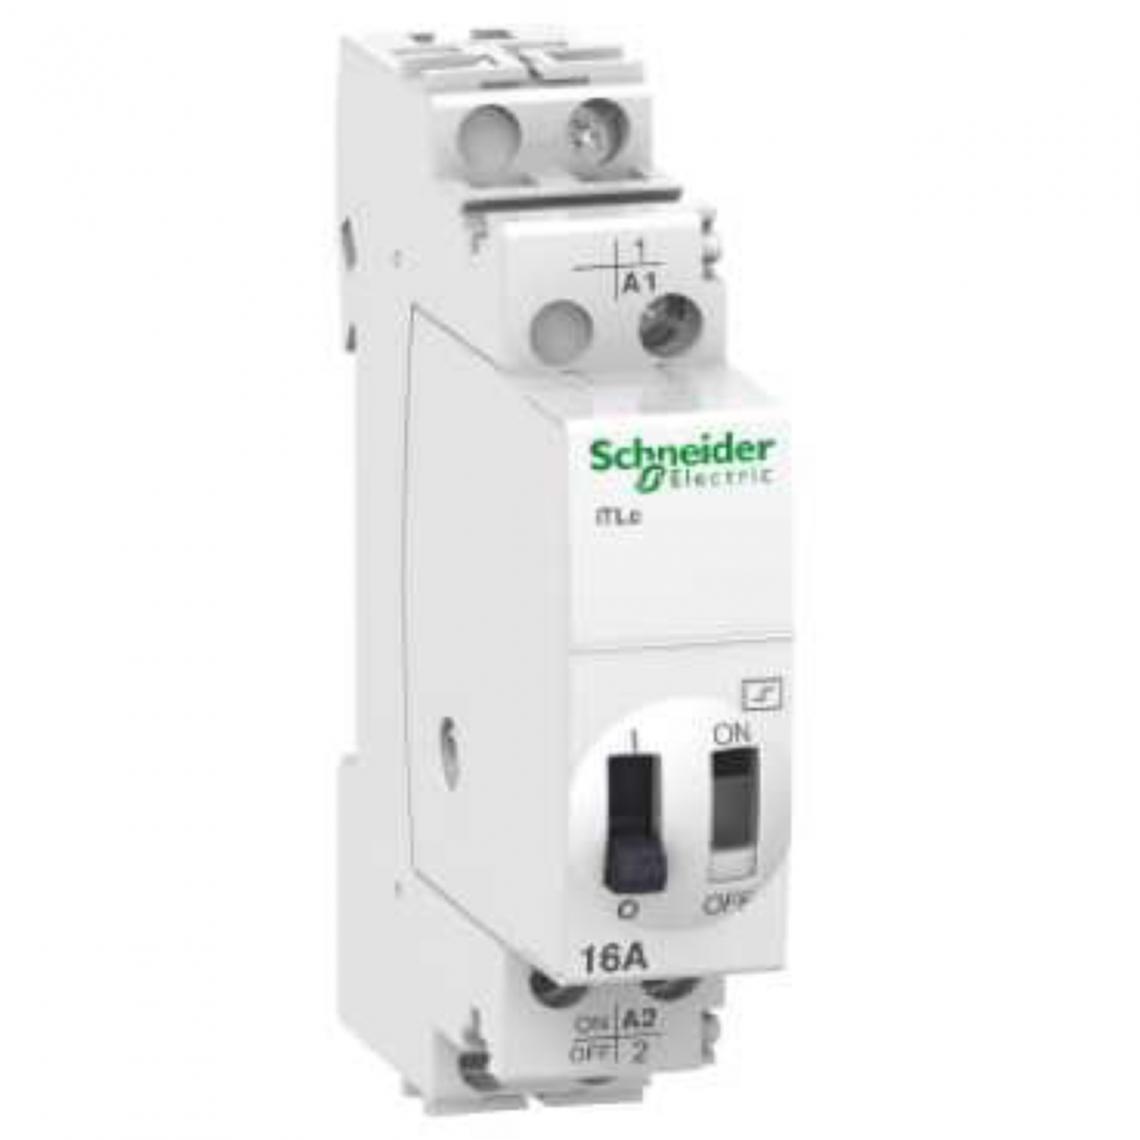 Schneider Electric - télérupteur - schneider - cde cent - 16a - 1no - 240v - schneider electric a9c33811 - Télérupteurs, minuteries et horloges